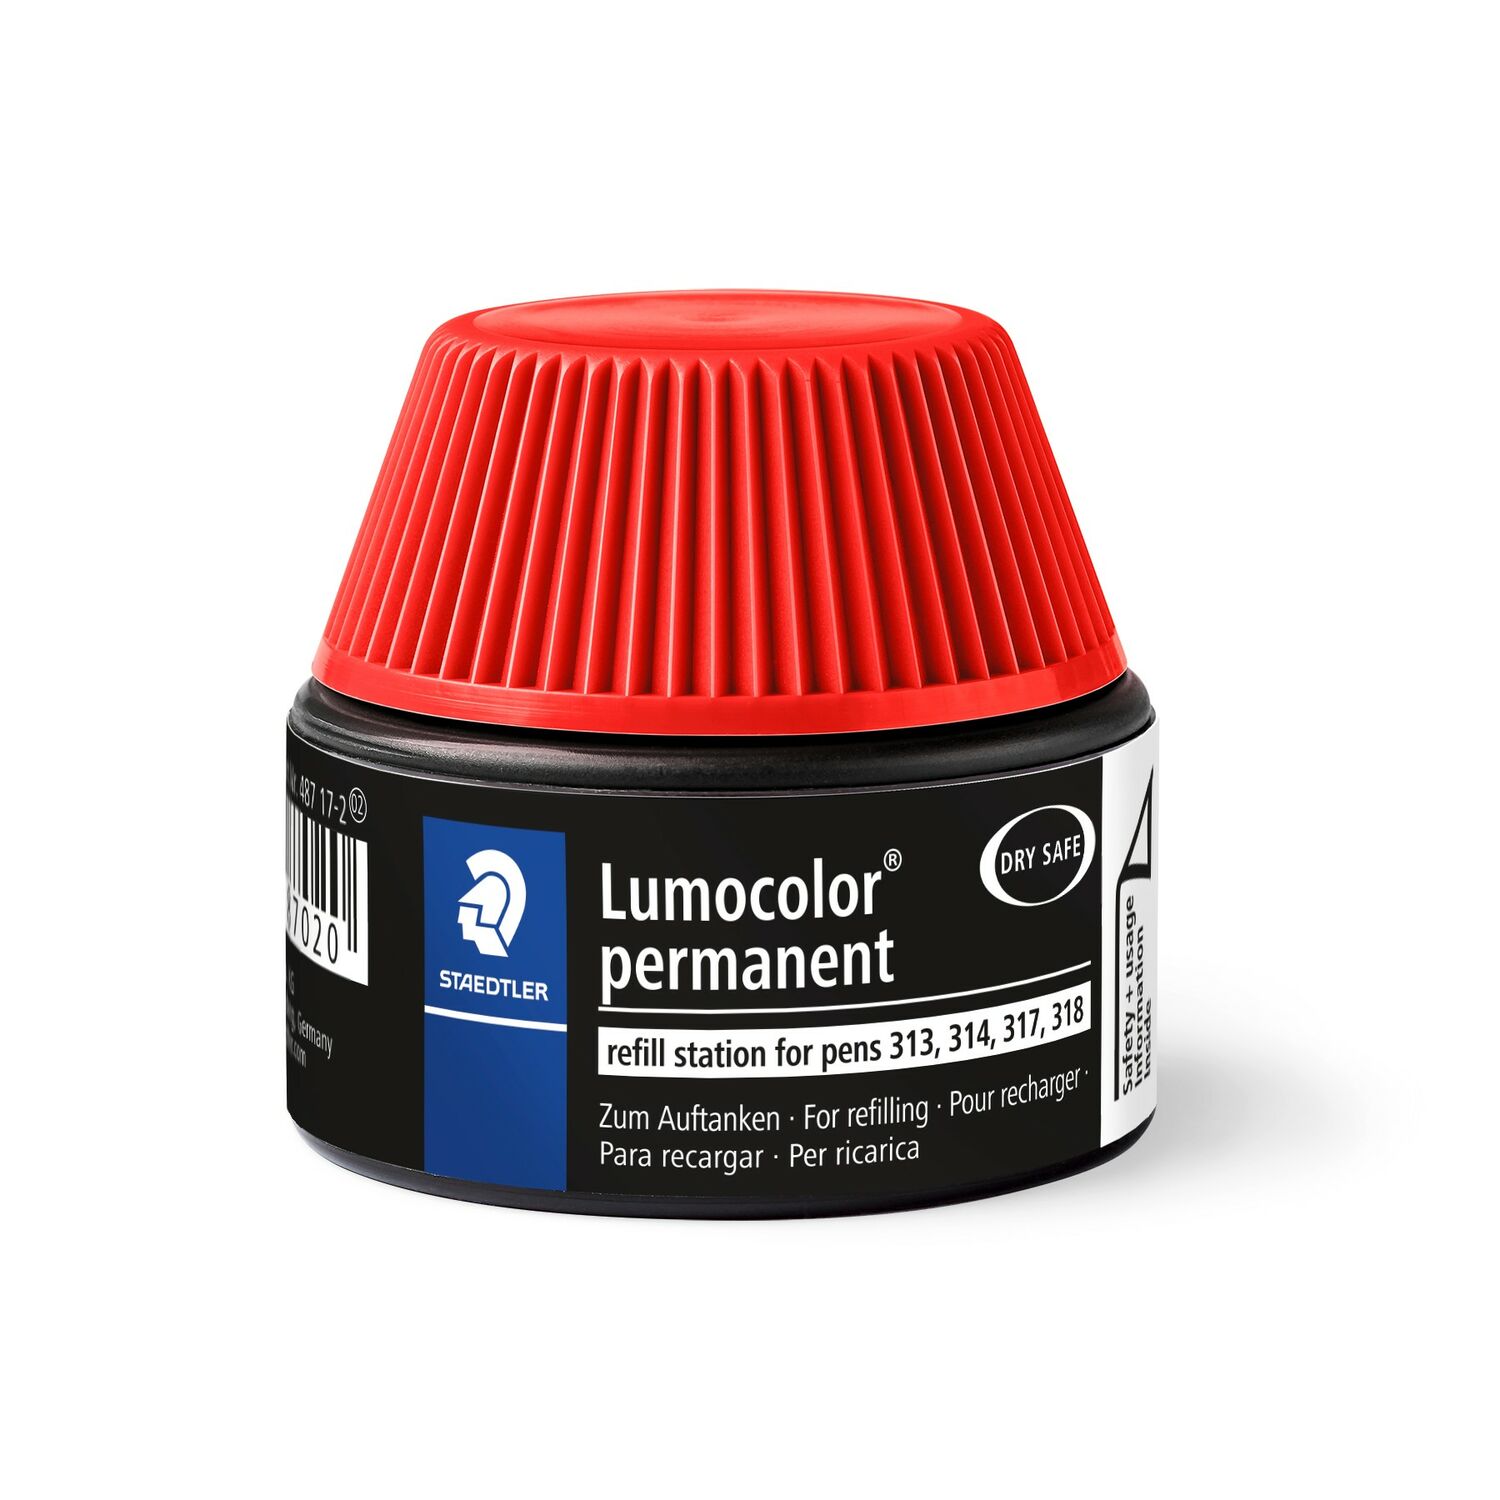 Lumocolor® permanent refill station 487 17 - Recharge pour Lumocolor permanent 313, 314, 317 et 318